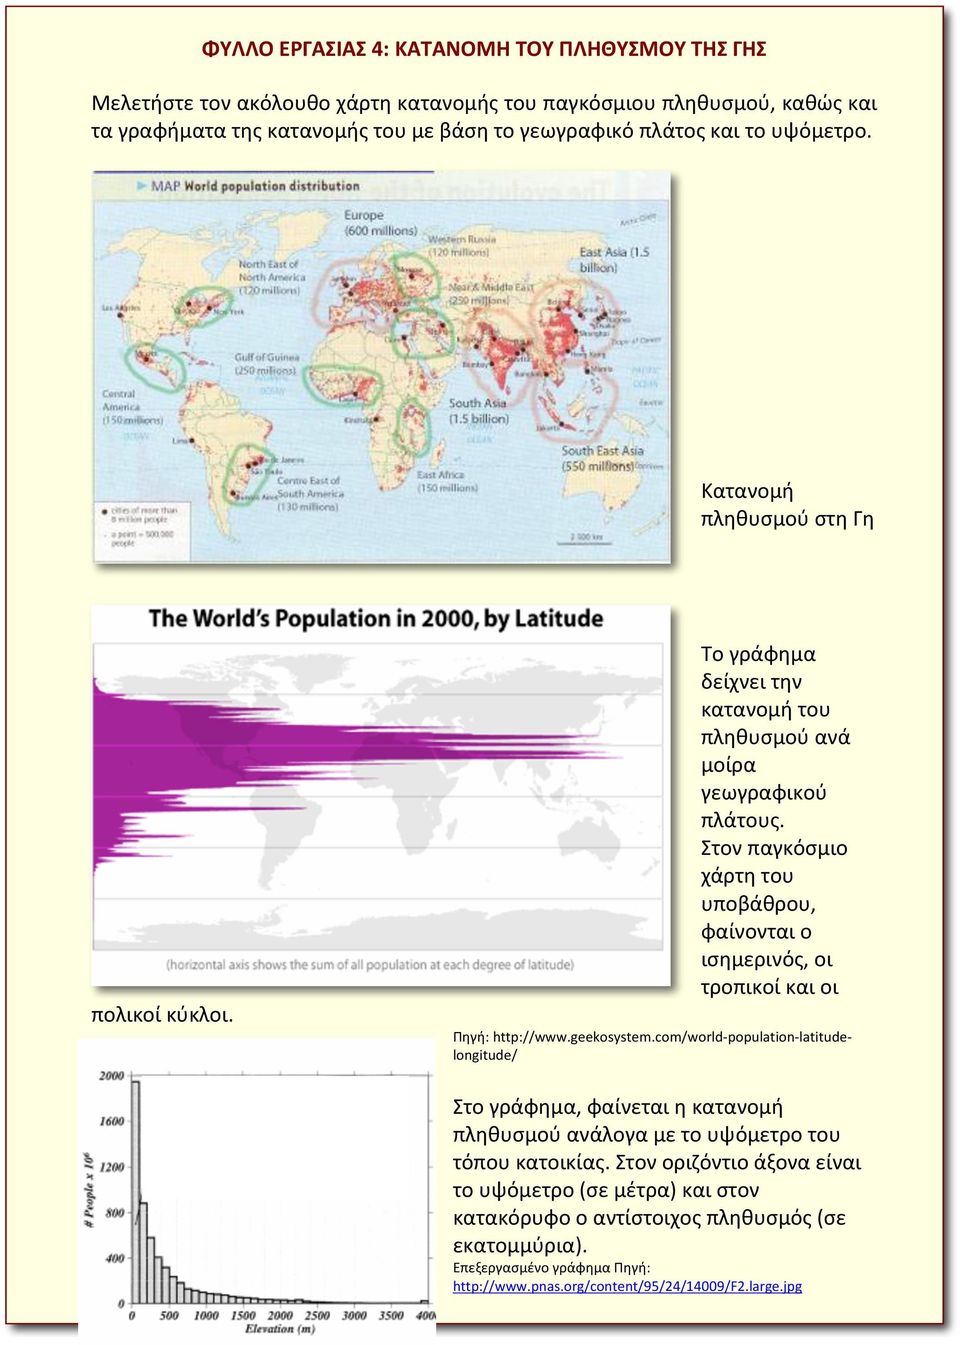 Στον παγκόσμιο χάρτη του υποβάθρου, φαίνονται ο ισημερινός, οι τροπικοί και οι Πηγή: http://www.geekosystem.